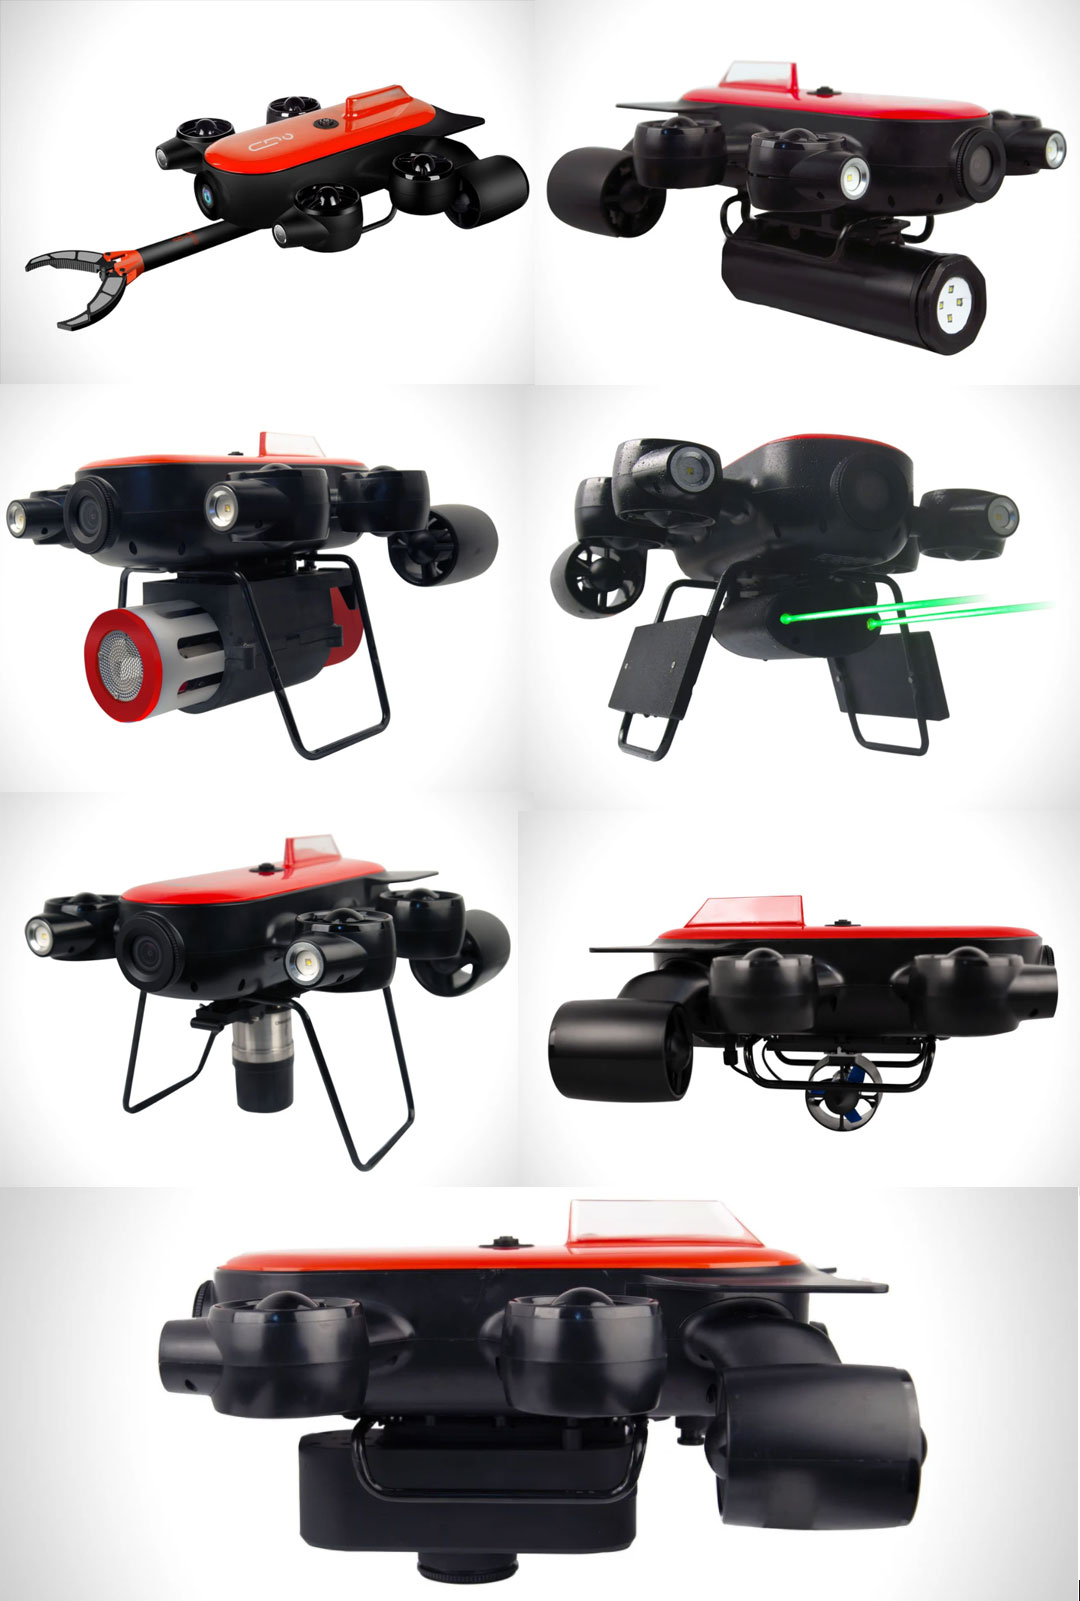 t1-pro-underwater-drone-attachments-modifications.jpg